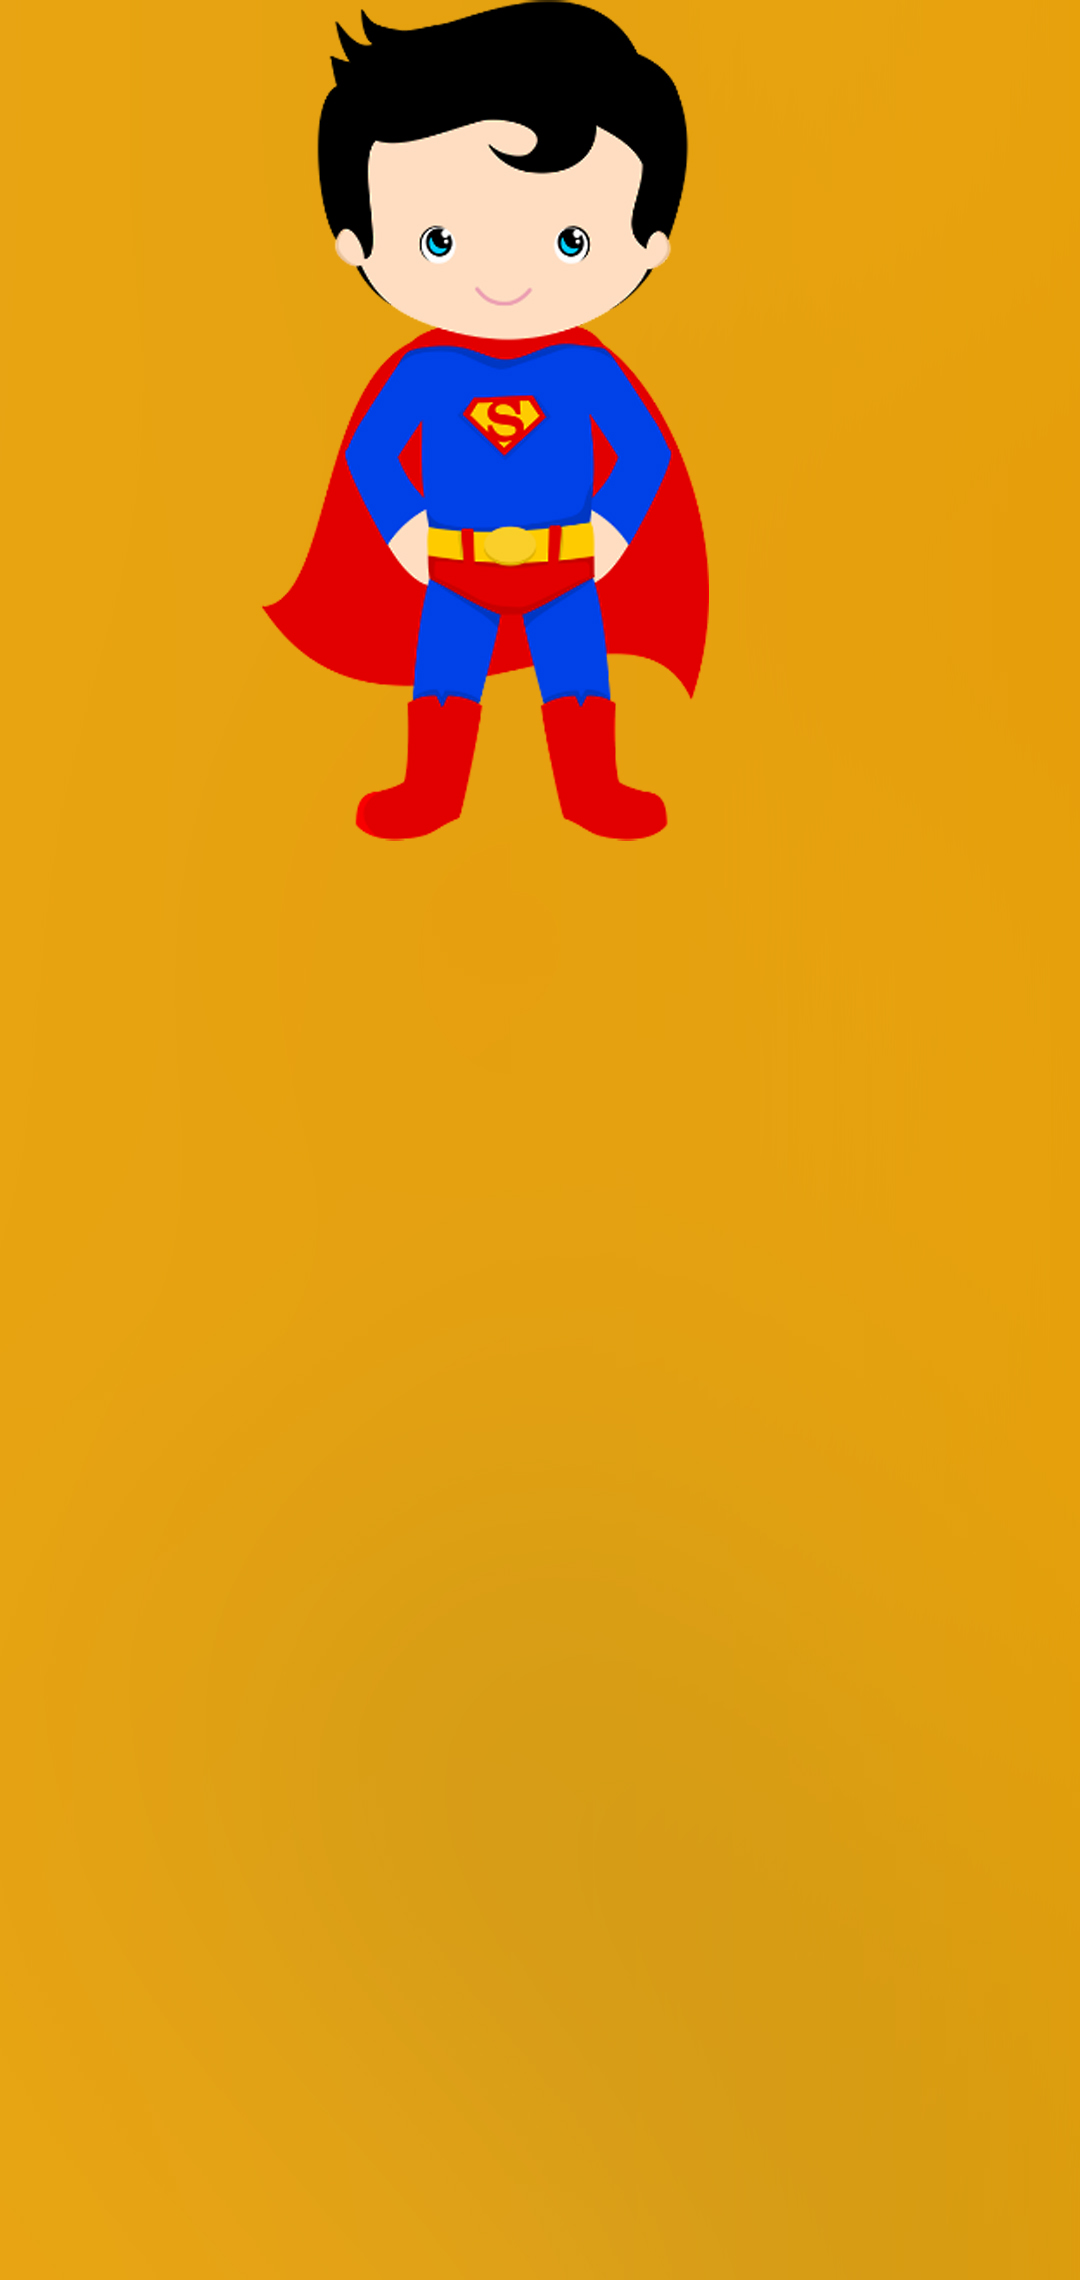 슈퍼맨 바탕 화면,노랑,빨간,만화,소설 속의 인물,슈퍼 히어로